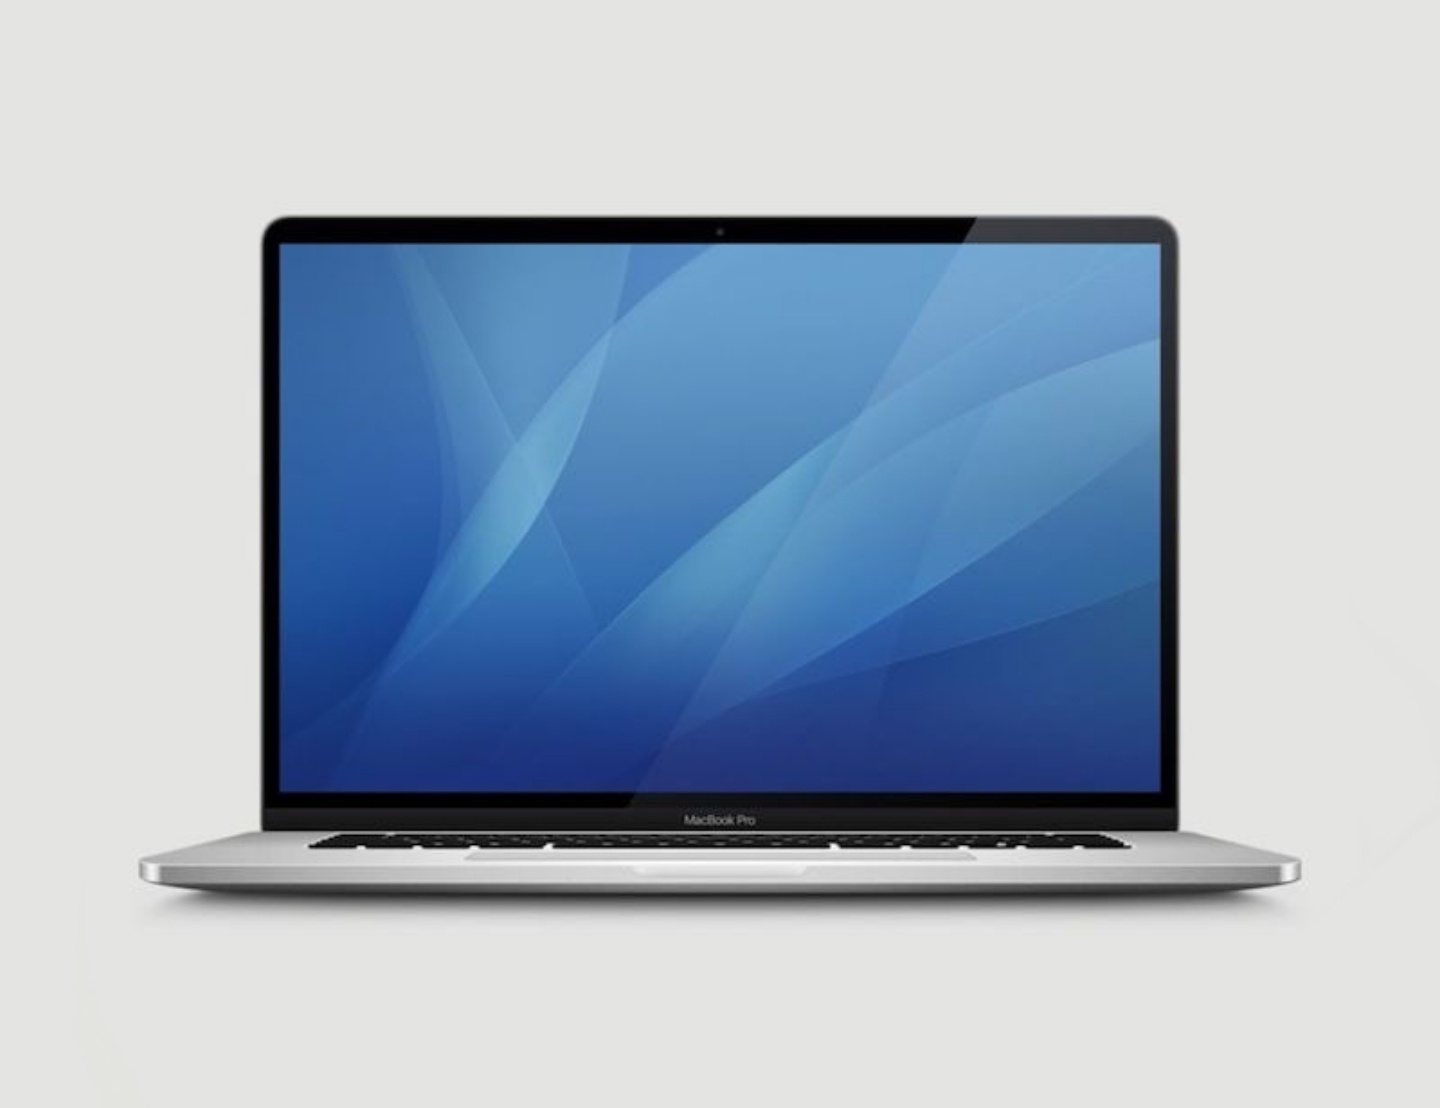 全新 AirPods Pro 預期售價將破八千！16 吋 MacBook Pro 外型也幾乎曝光啦！